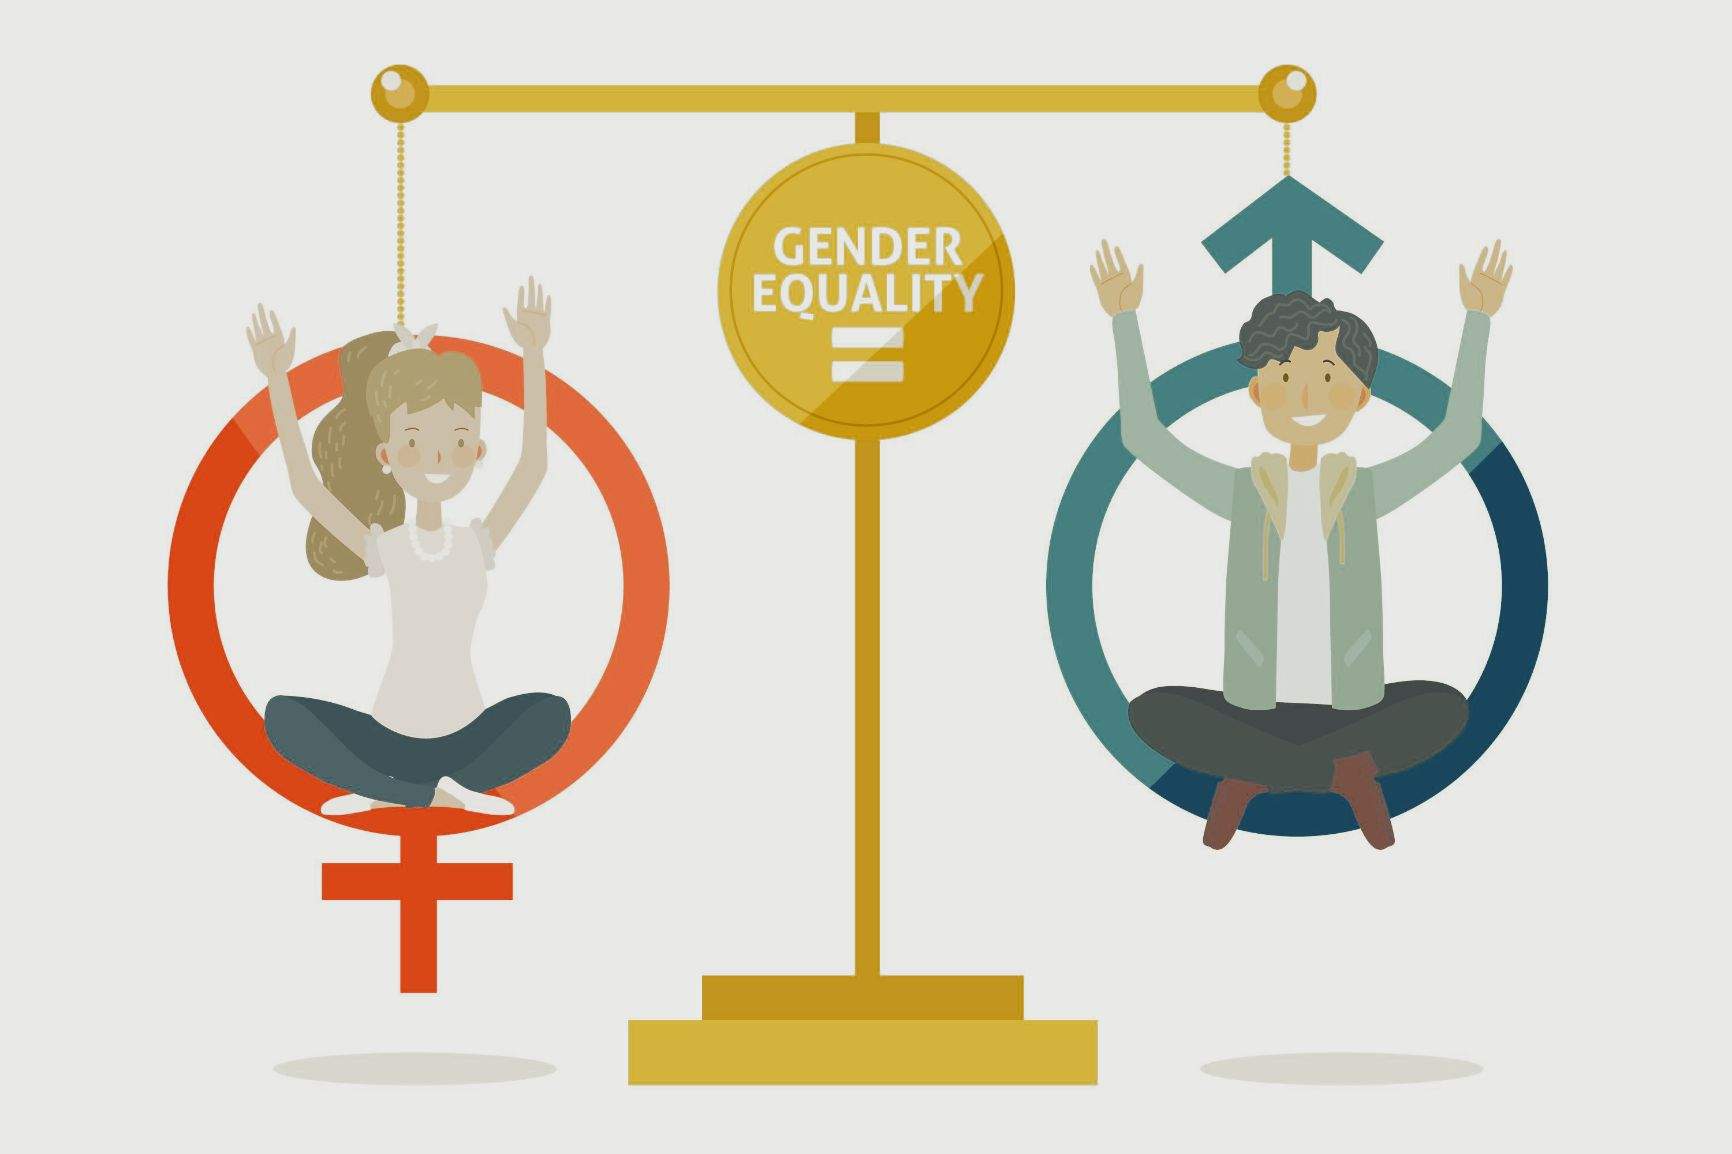 Igualdad de oportunidades y de trato entre géneros